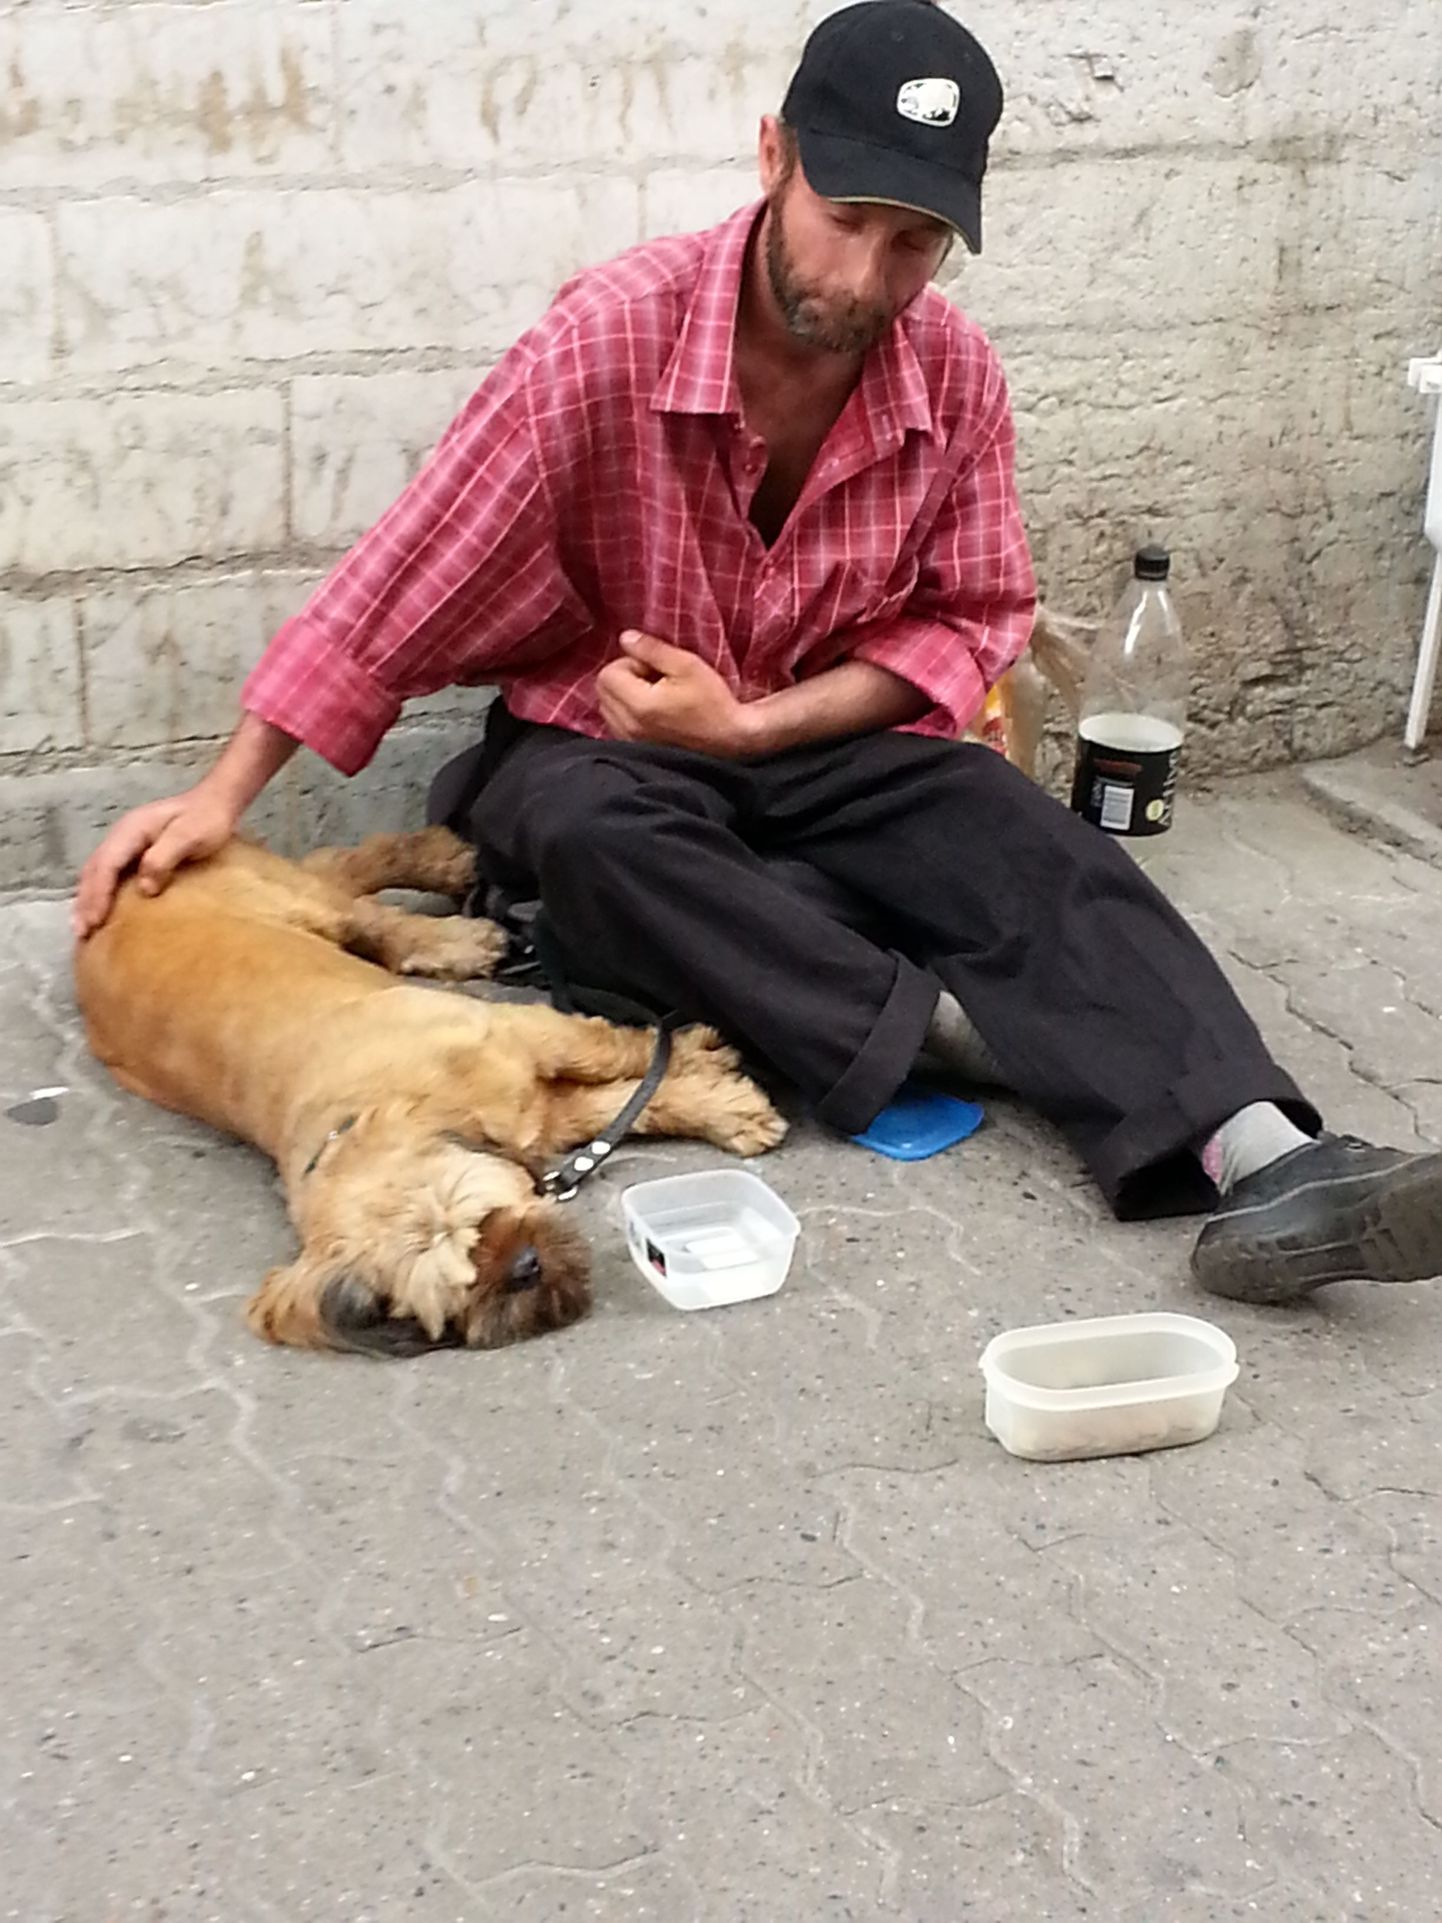 Mees väidetavalt apaatse koeraga Viru tänaval raha kerjamas.